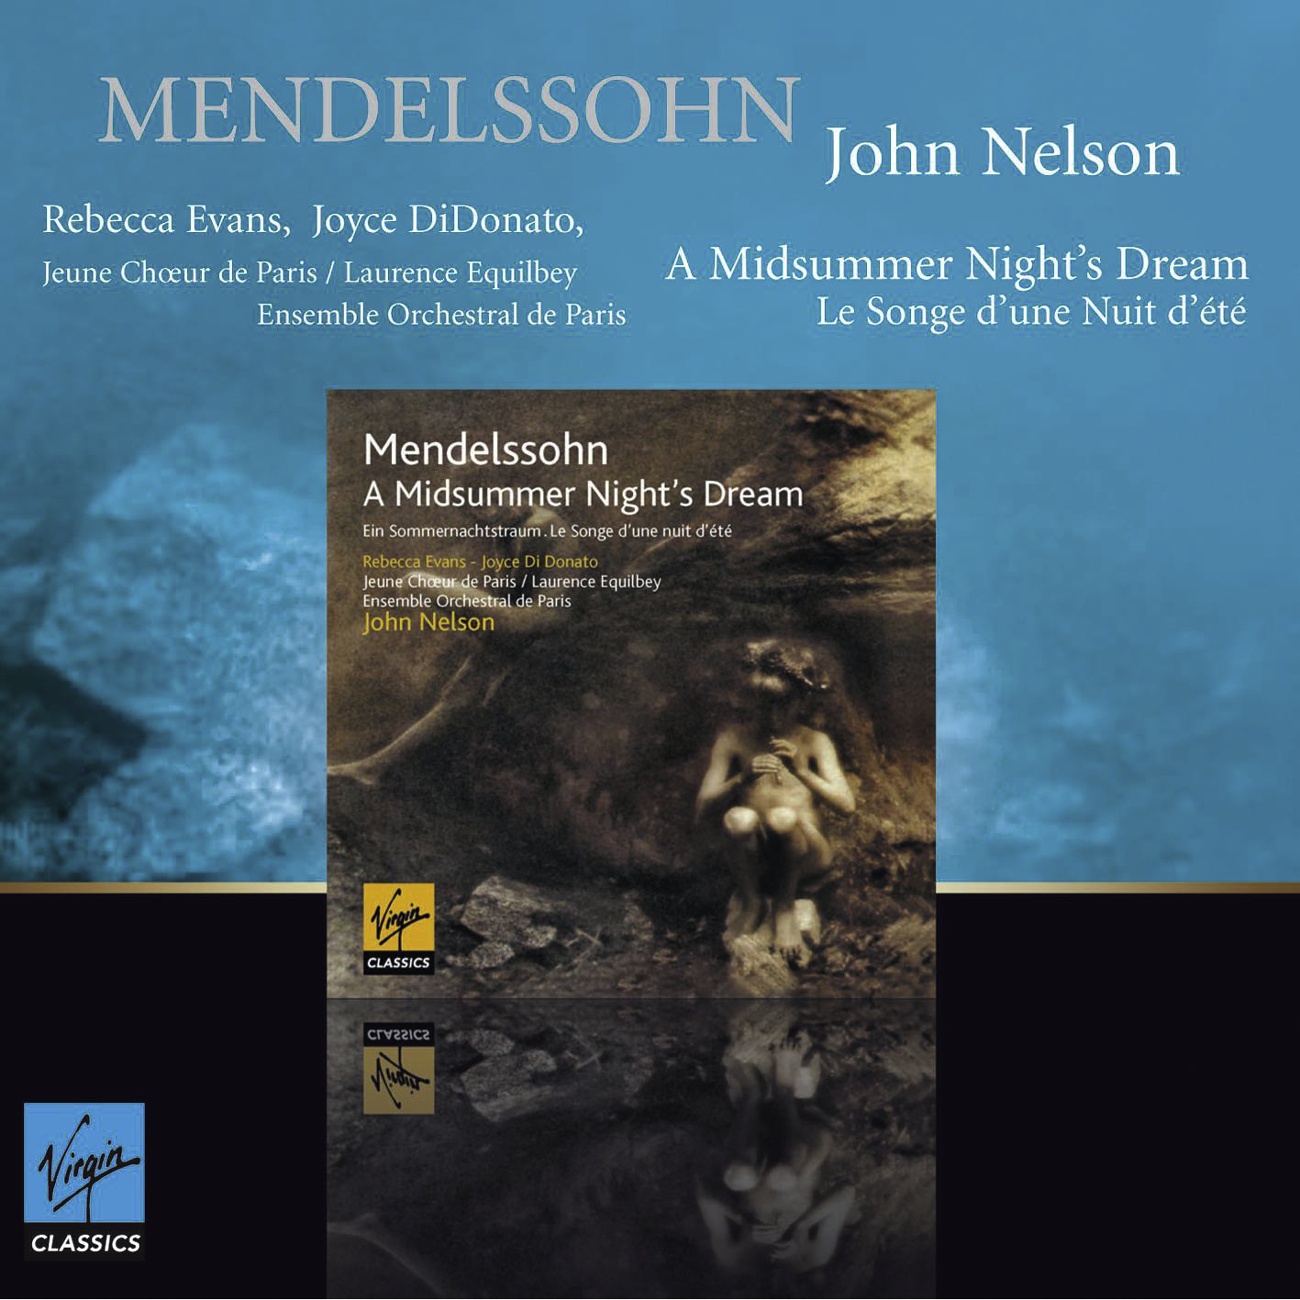 A Midsummer Night's Dream Op.61 (1843): Intermezzo : Allegro appassionato - Allegro molto comodo